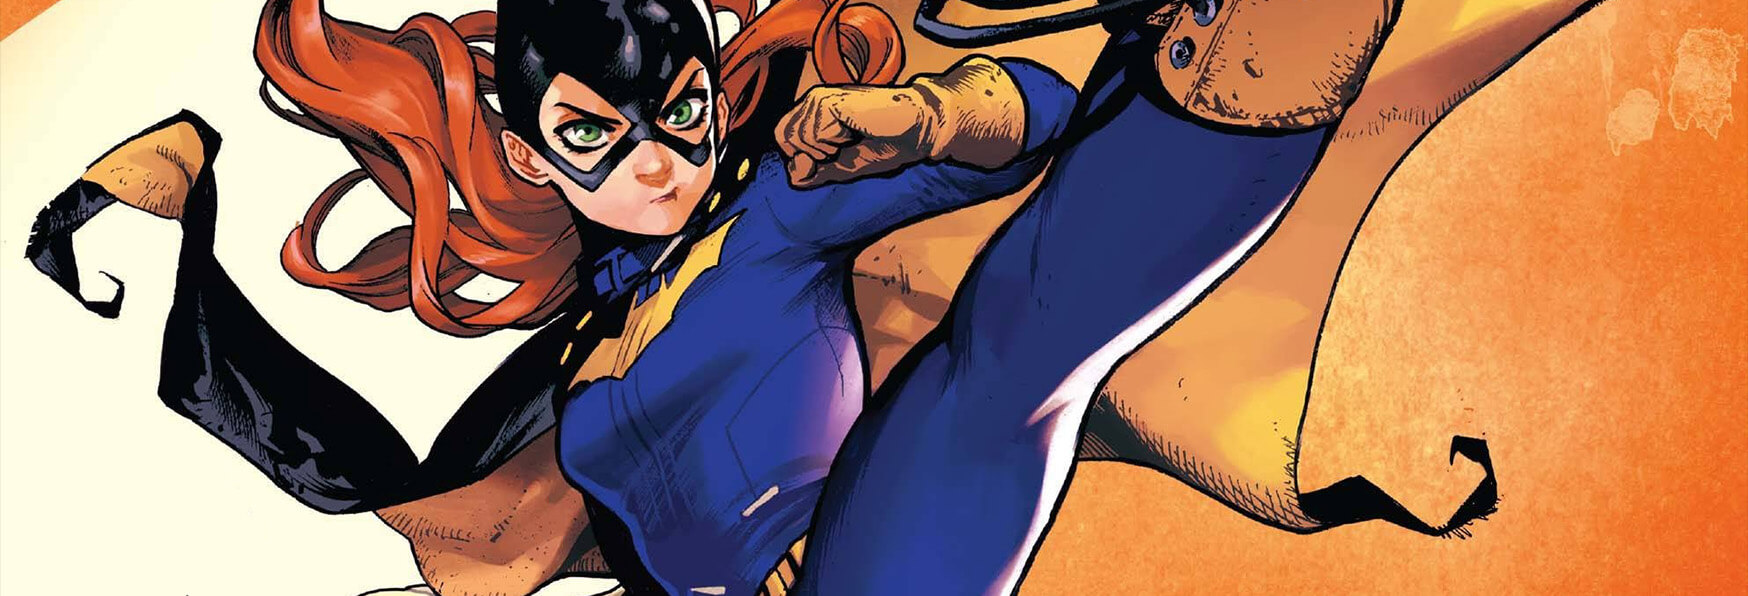 Voci parlano di una nuova Serie DC su Batgirl